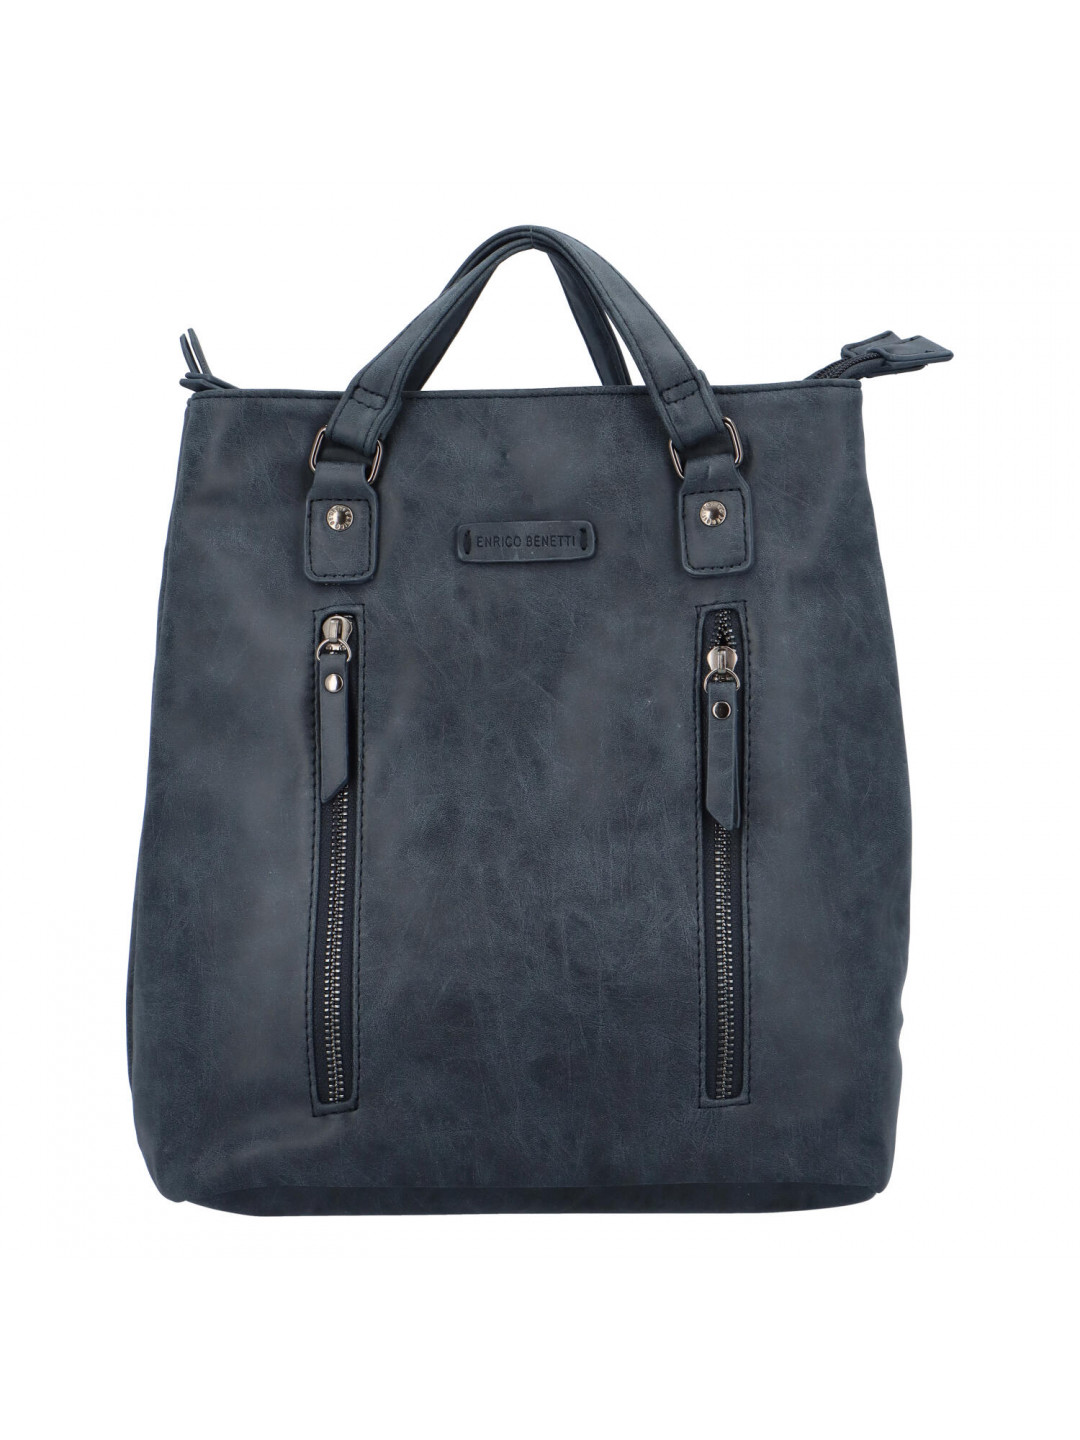 Dámský stylový batoh kabelka tmavě modrý – Enrico Benetti Brisaus